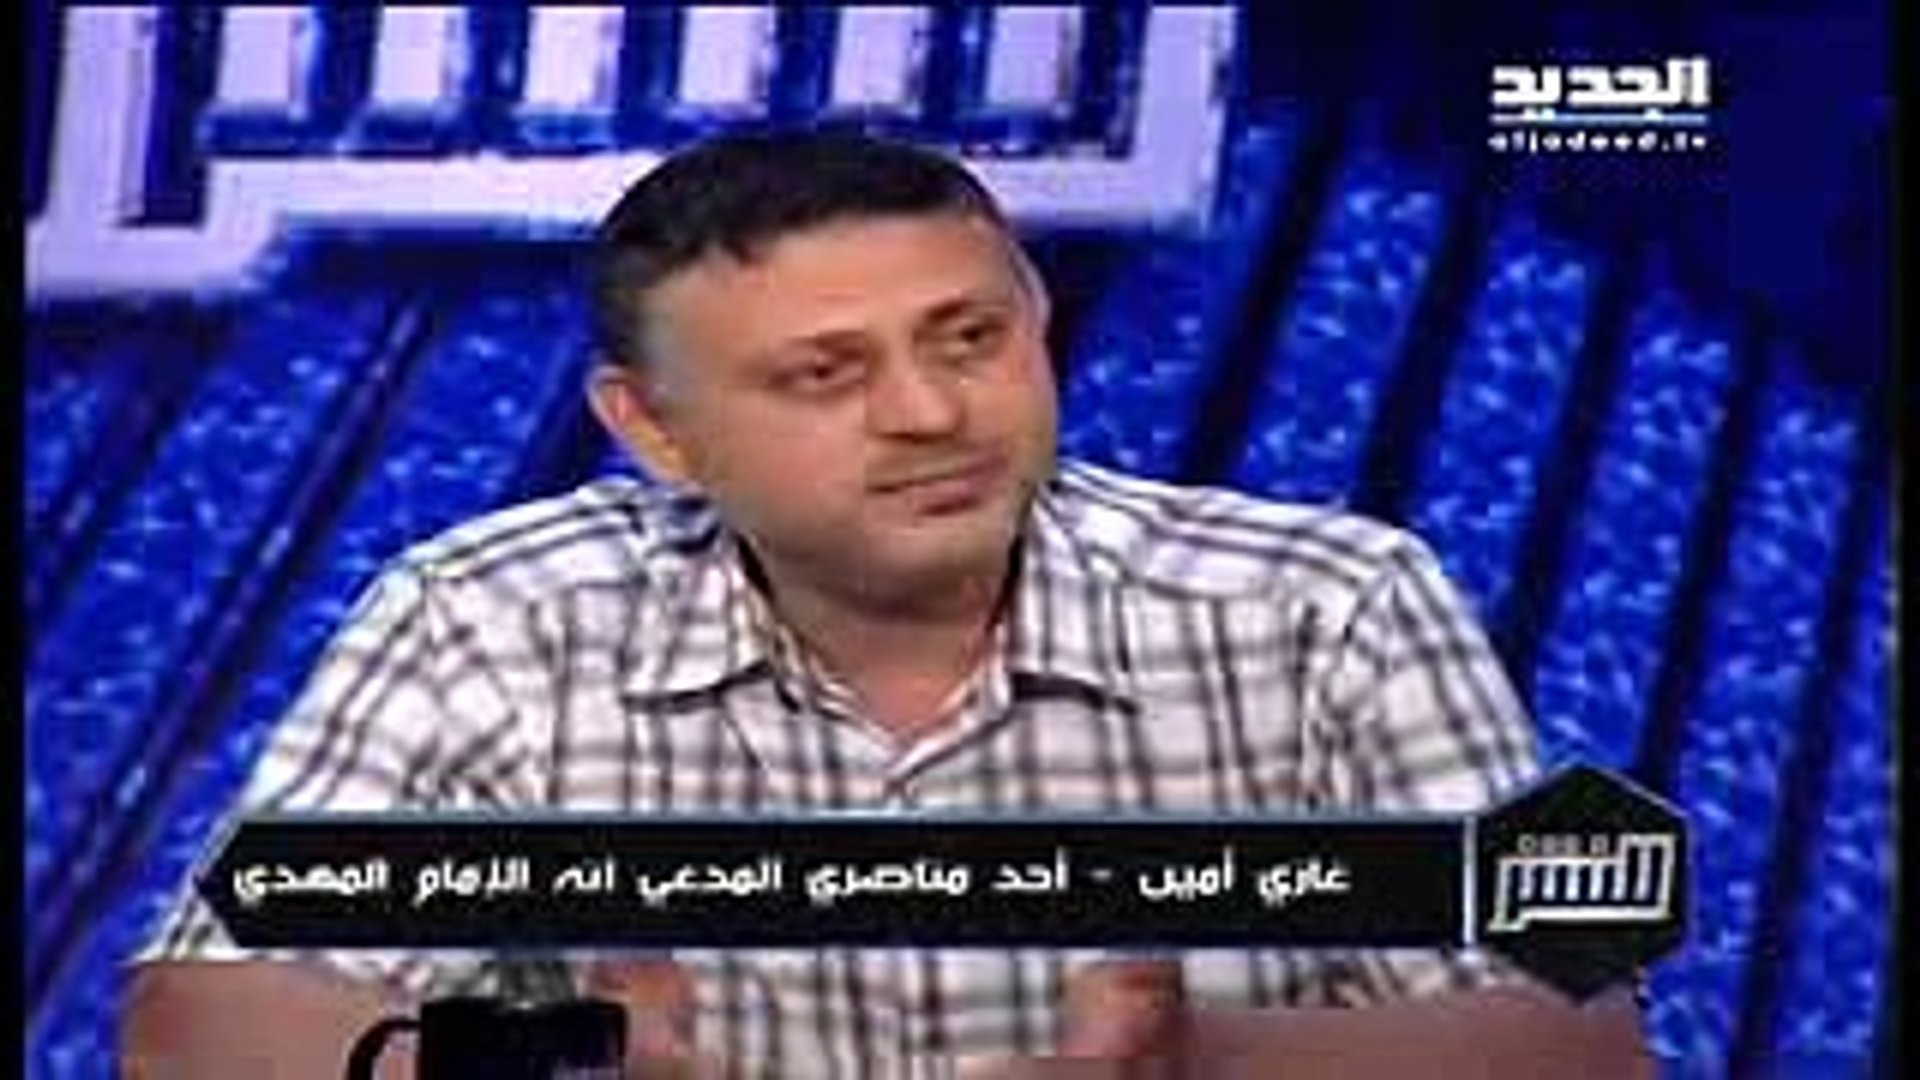 عاجل: خبر ظهور المهدي المنتظر على قناة الجديد اللبنانية - Vidéo Dailymotion